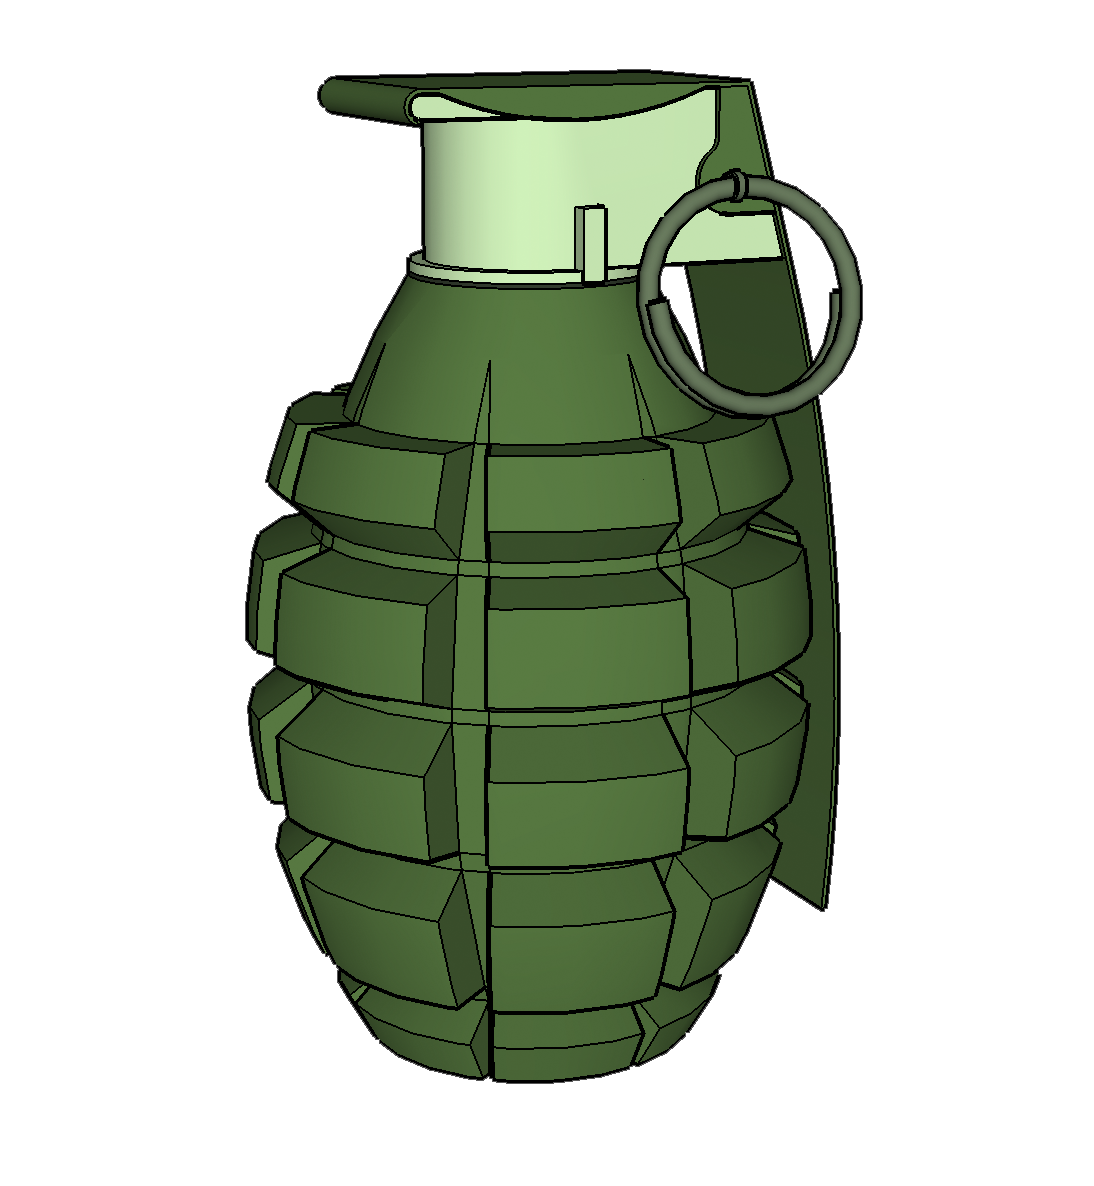 Mark 2 Grenade